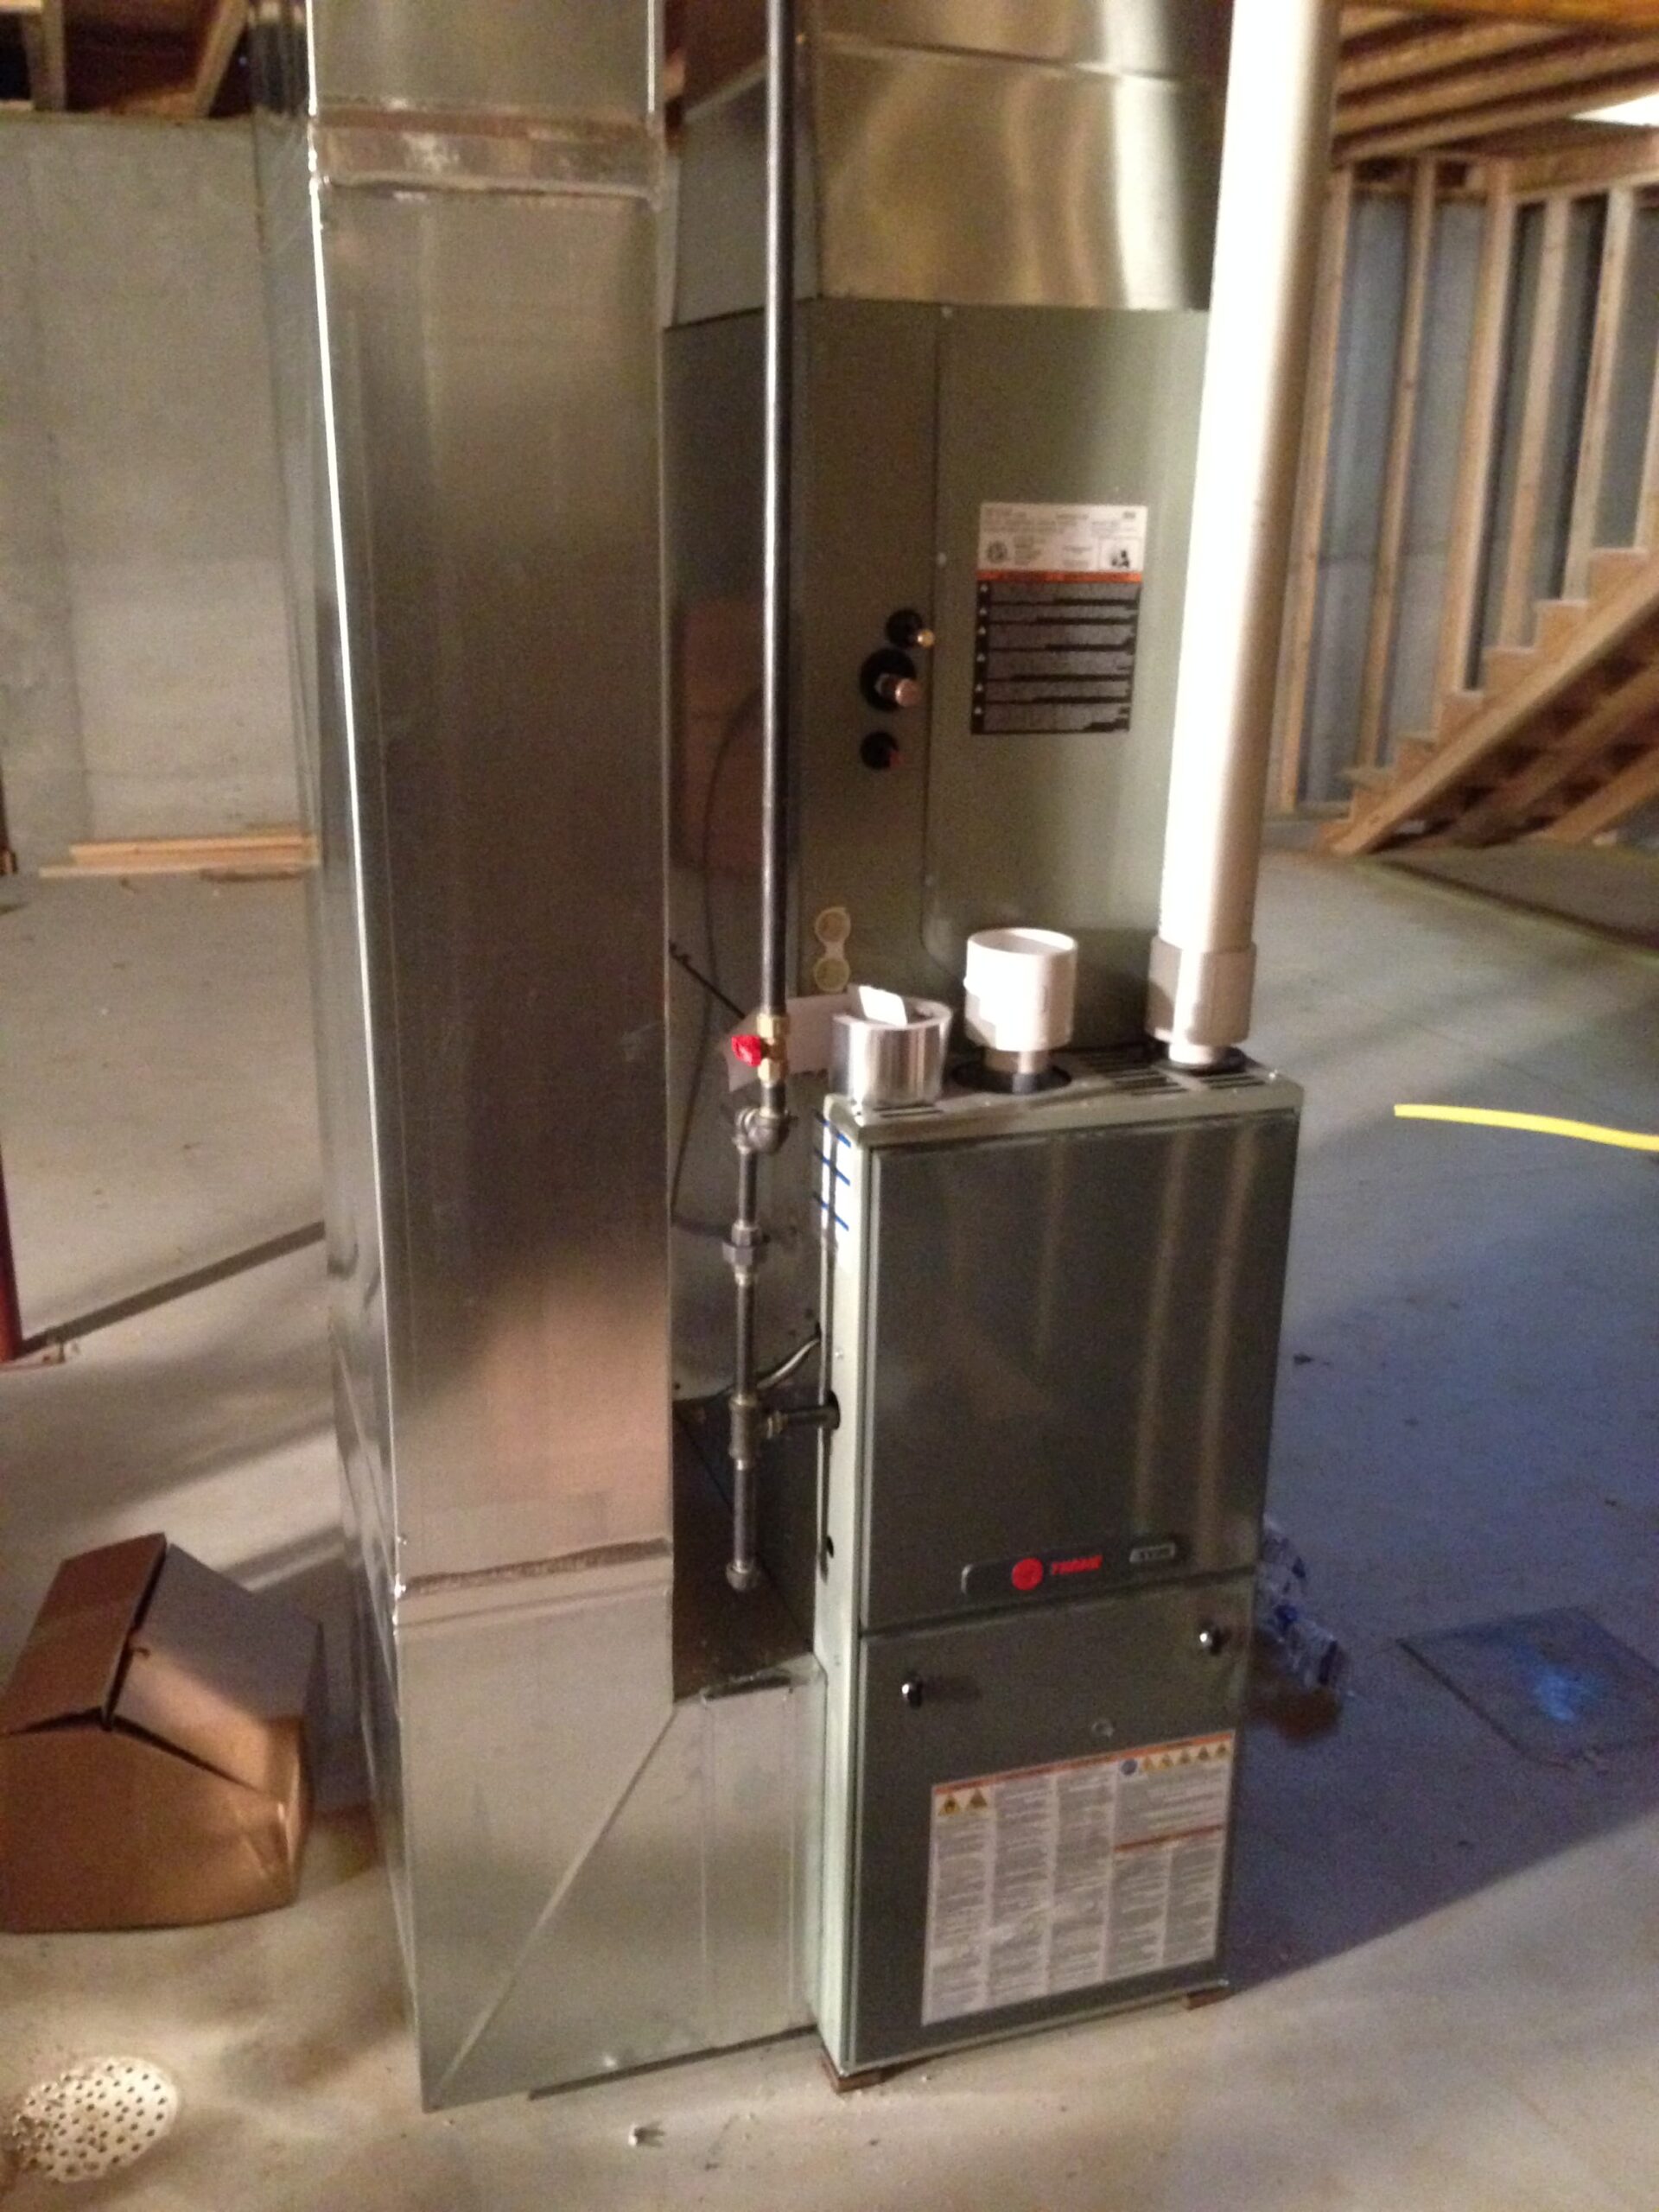 HVAC unit in a basement